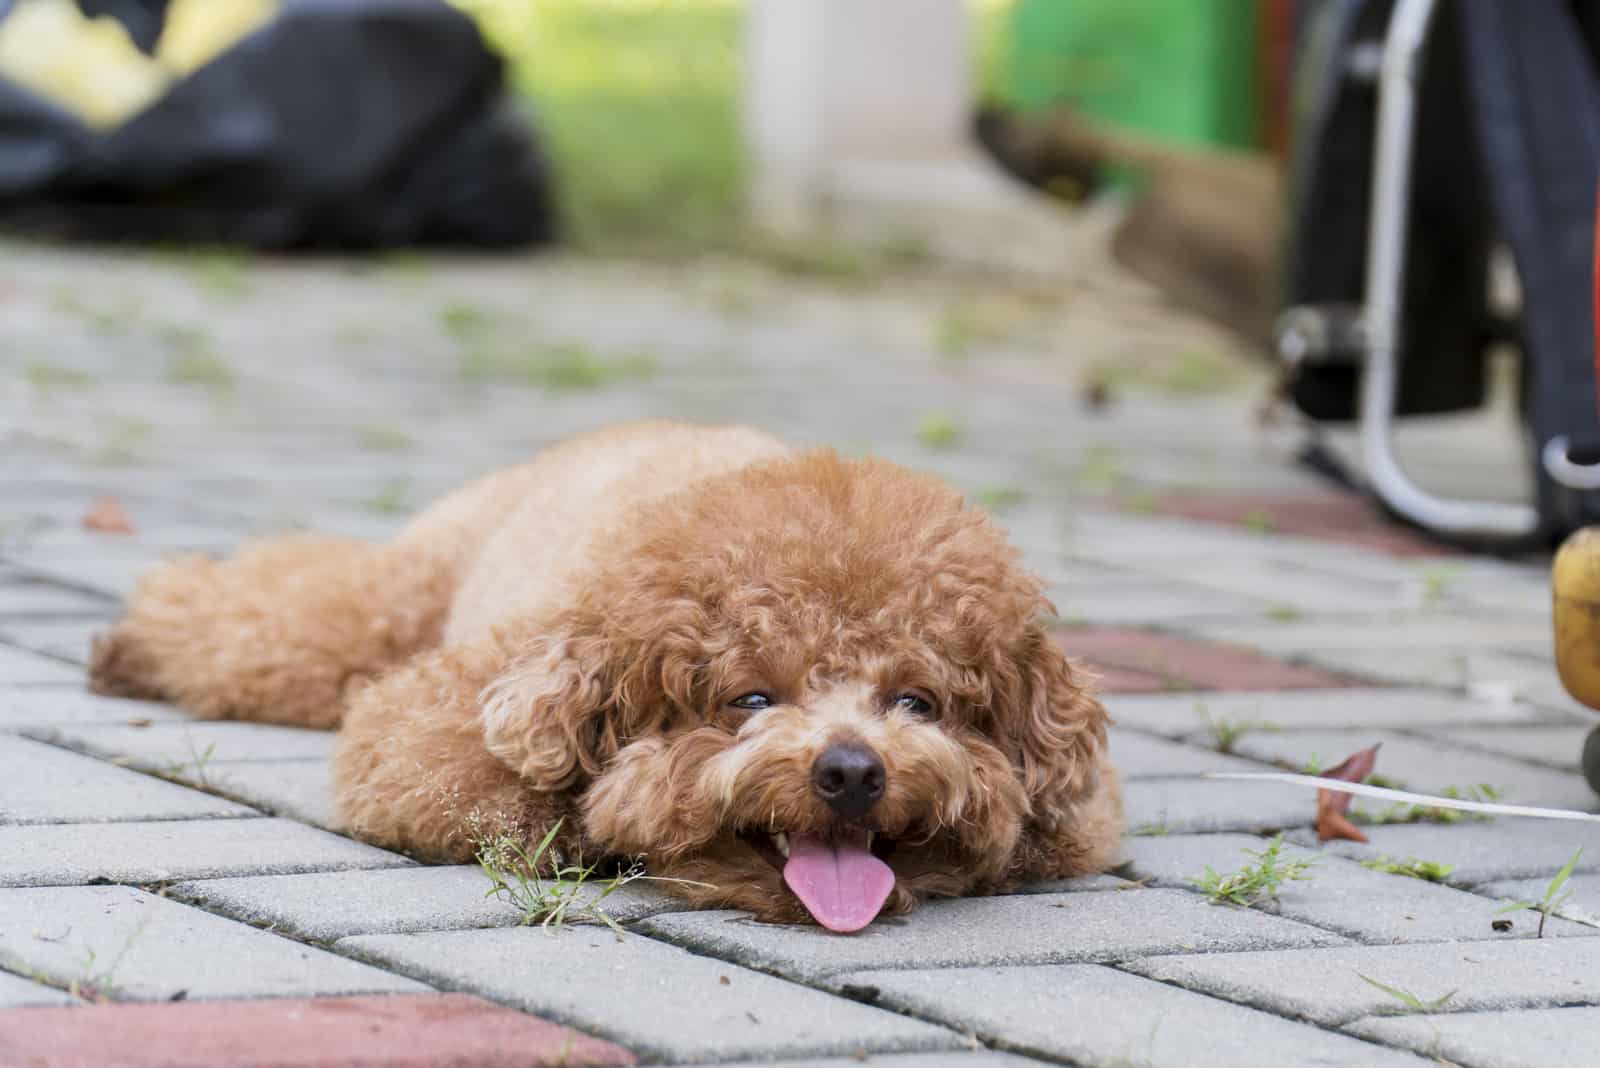 miniature poodle resting on floor